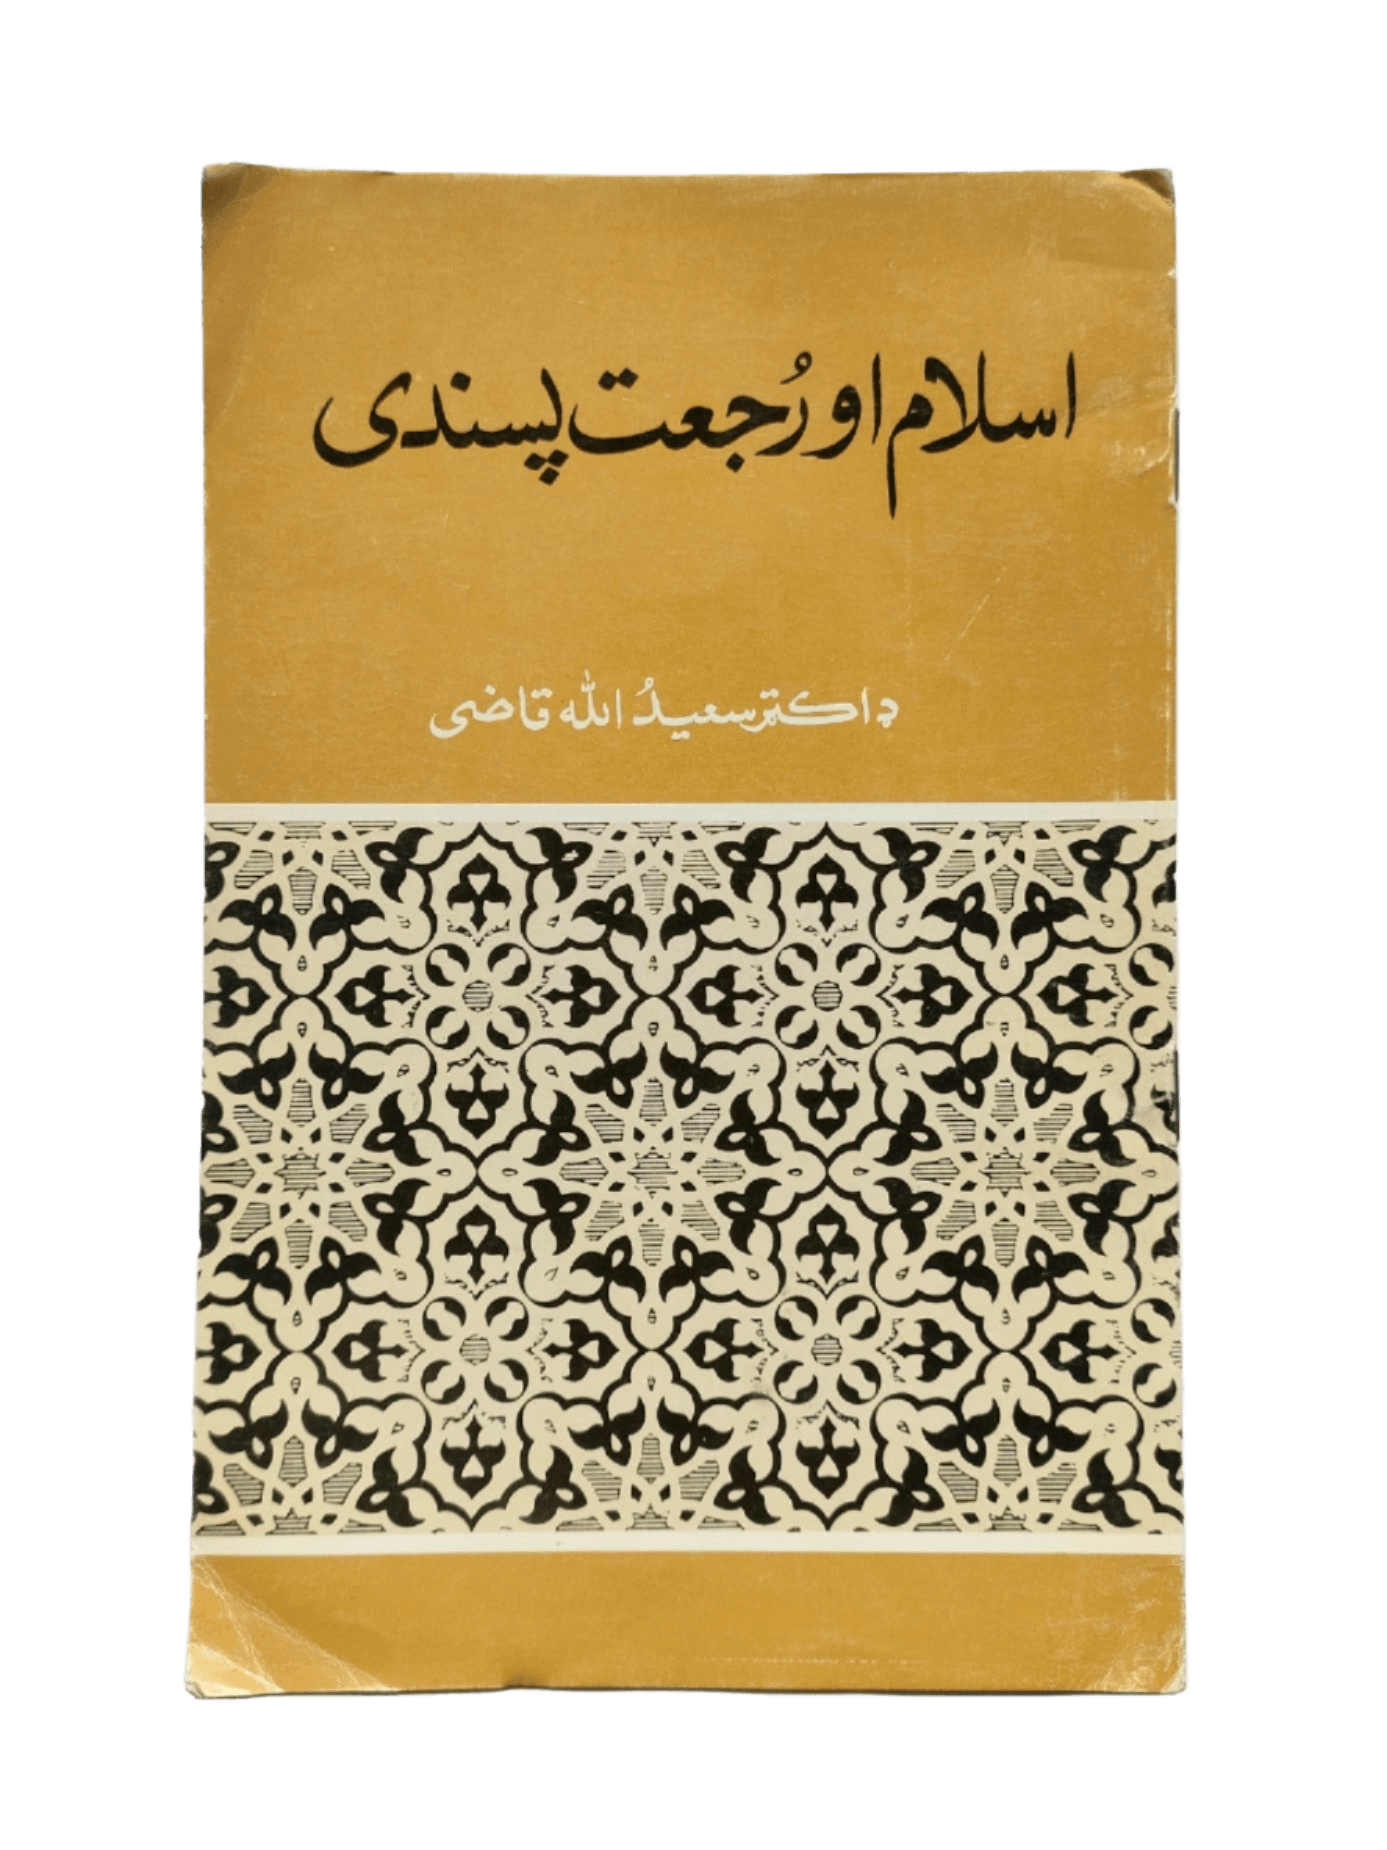 Islam Ao Rujj'at Pasandi (Islam And Regressiveness) - KHAJISTAN™